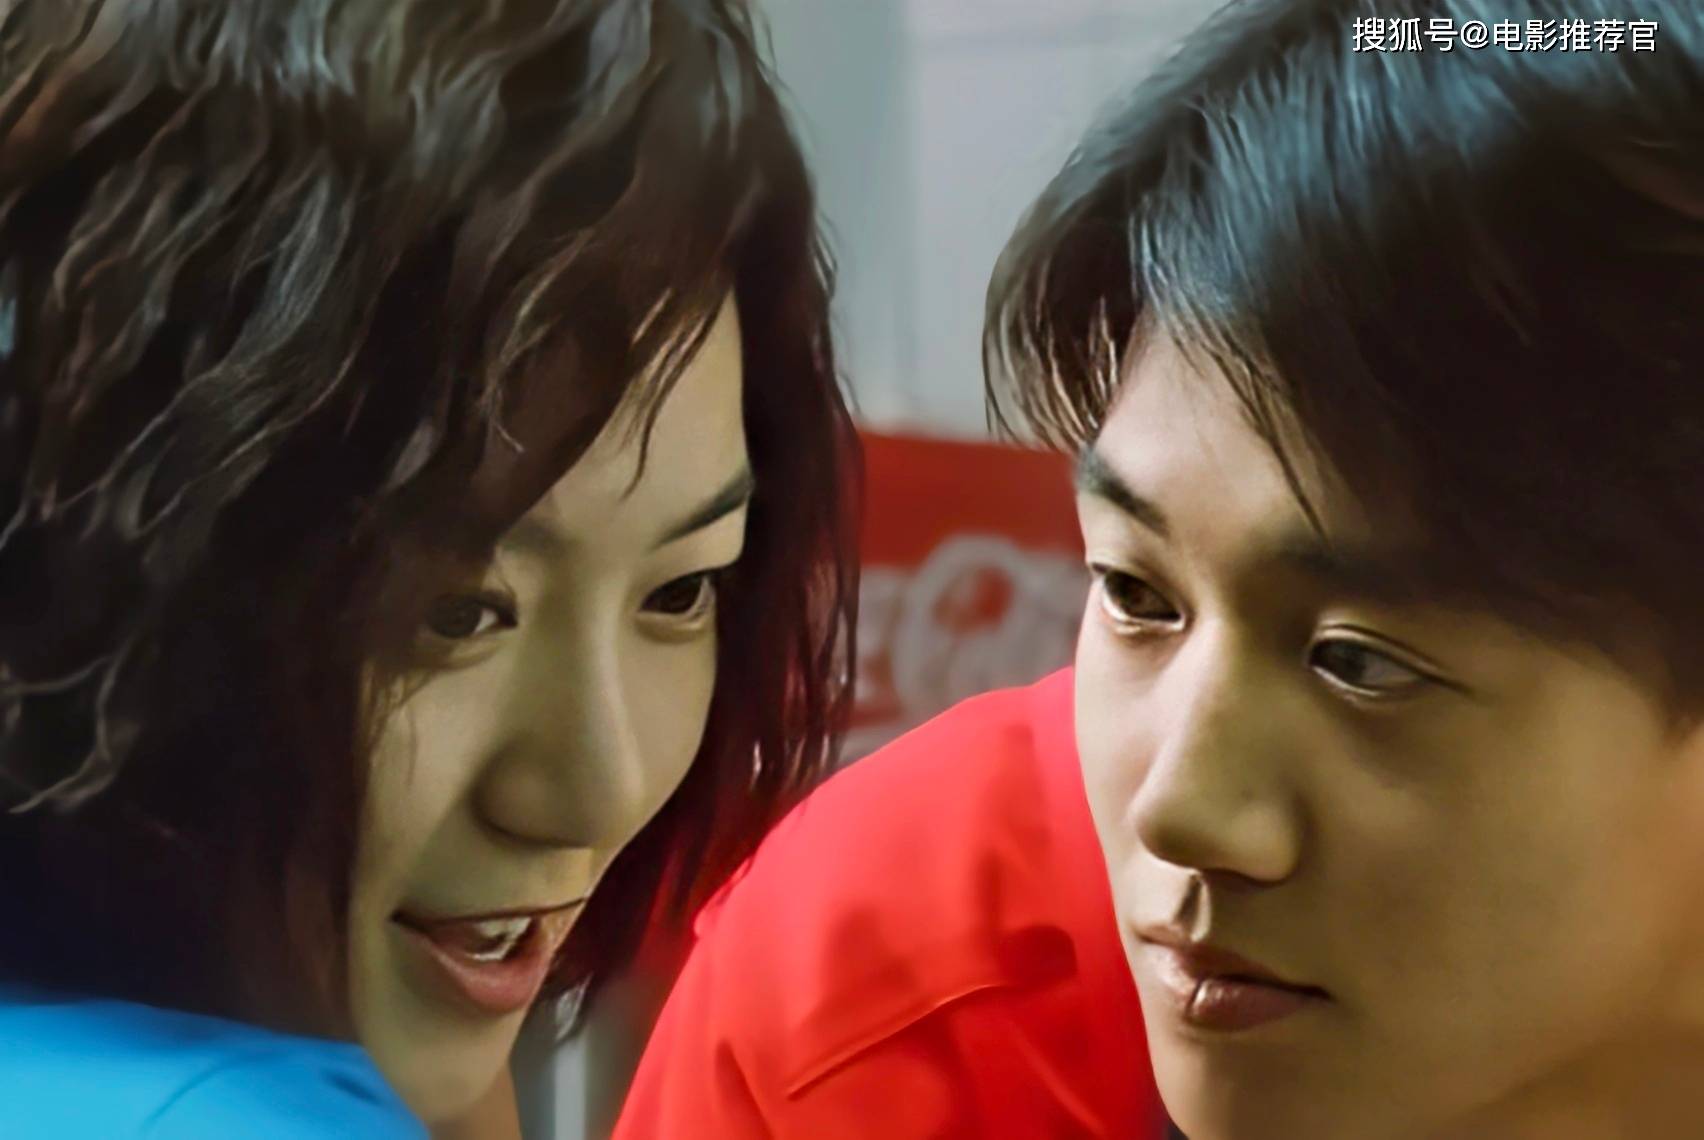 韩国风月电影《青春》:成长的痛苦与爱情的迷茫